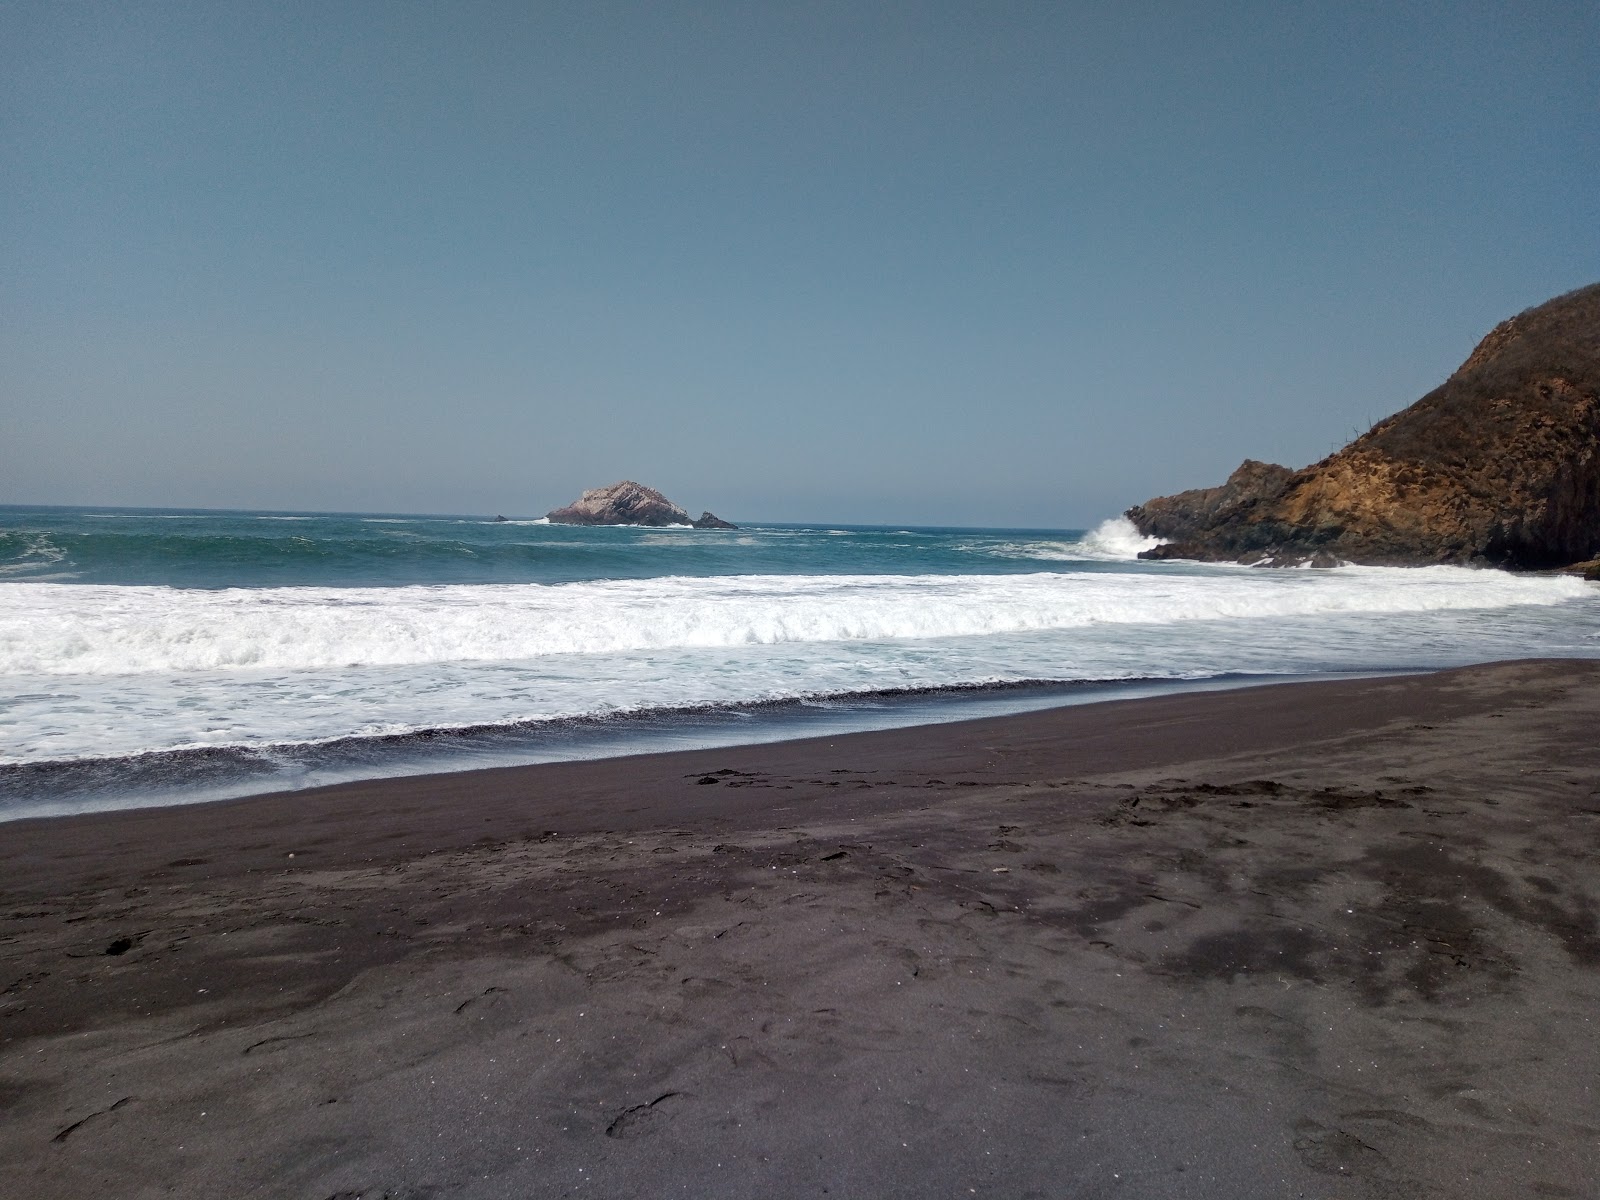 Playa Campos'in fotoğrafı kahverengi kum yüzey ile